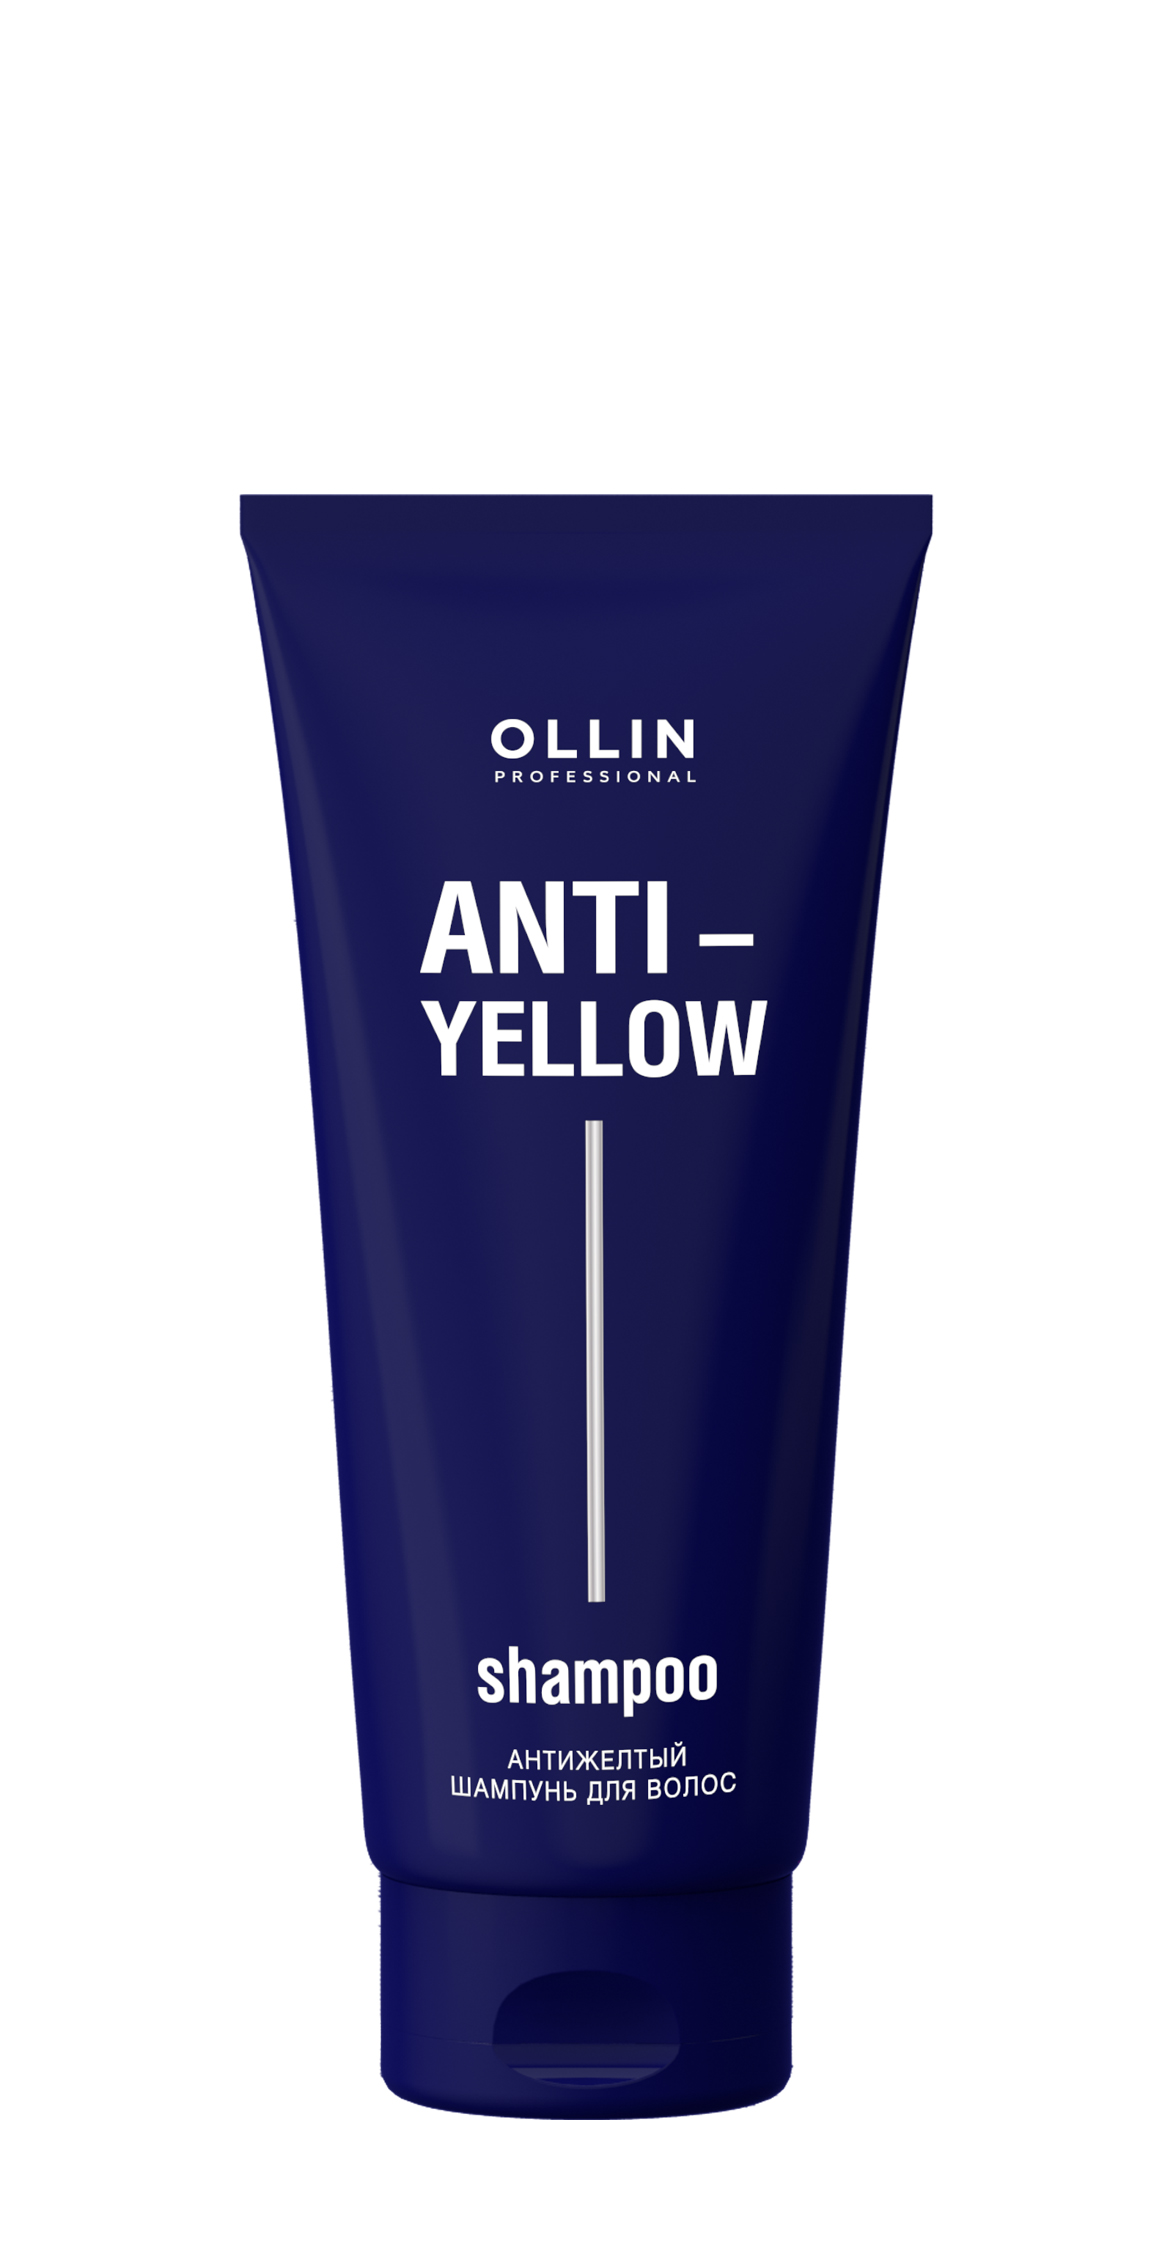 Антижелтый шампунь для волос OLLIN ANTI-YELLOW 250мл